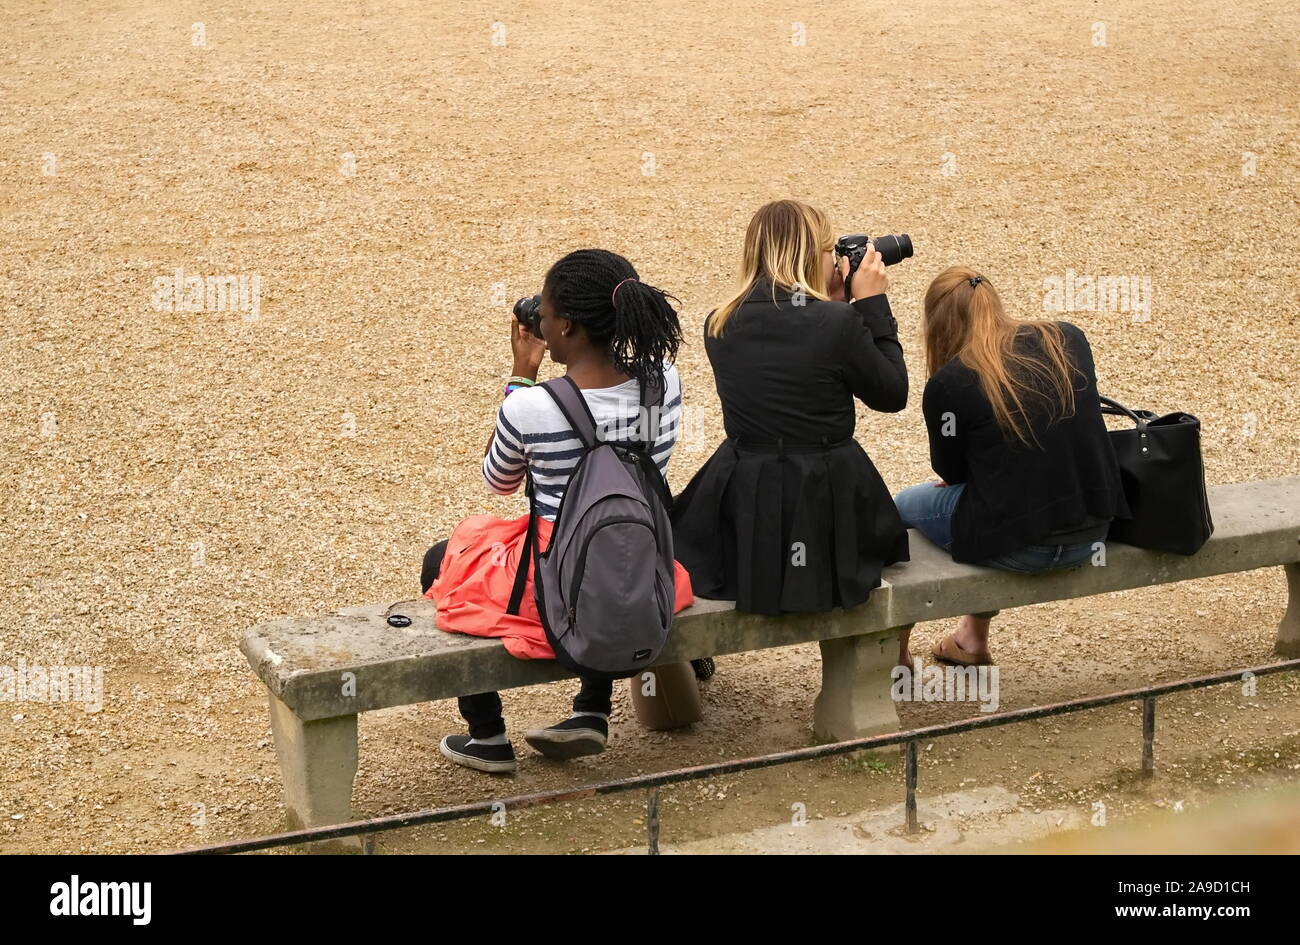 Paris, Ile-de-France/Frankreich - Juni 20, 2016: Drei weibliche Touristen auf einer Parkbank sitzen und Fotos mit digitalen Kameras nehmen Stockfoto